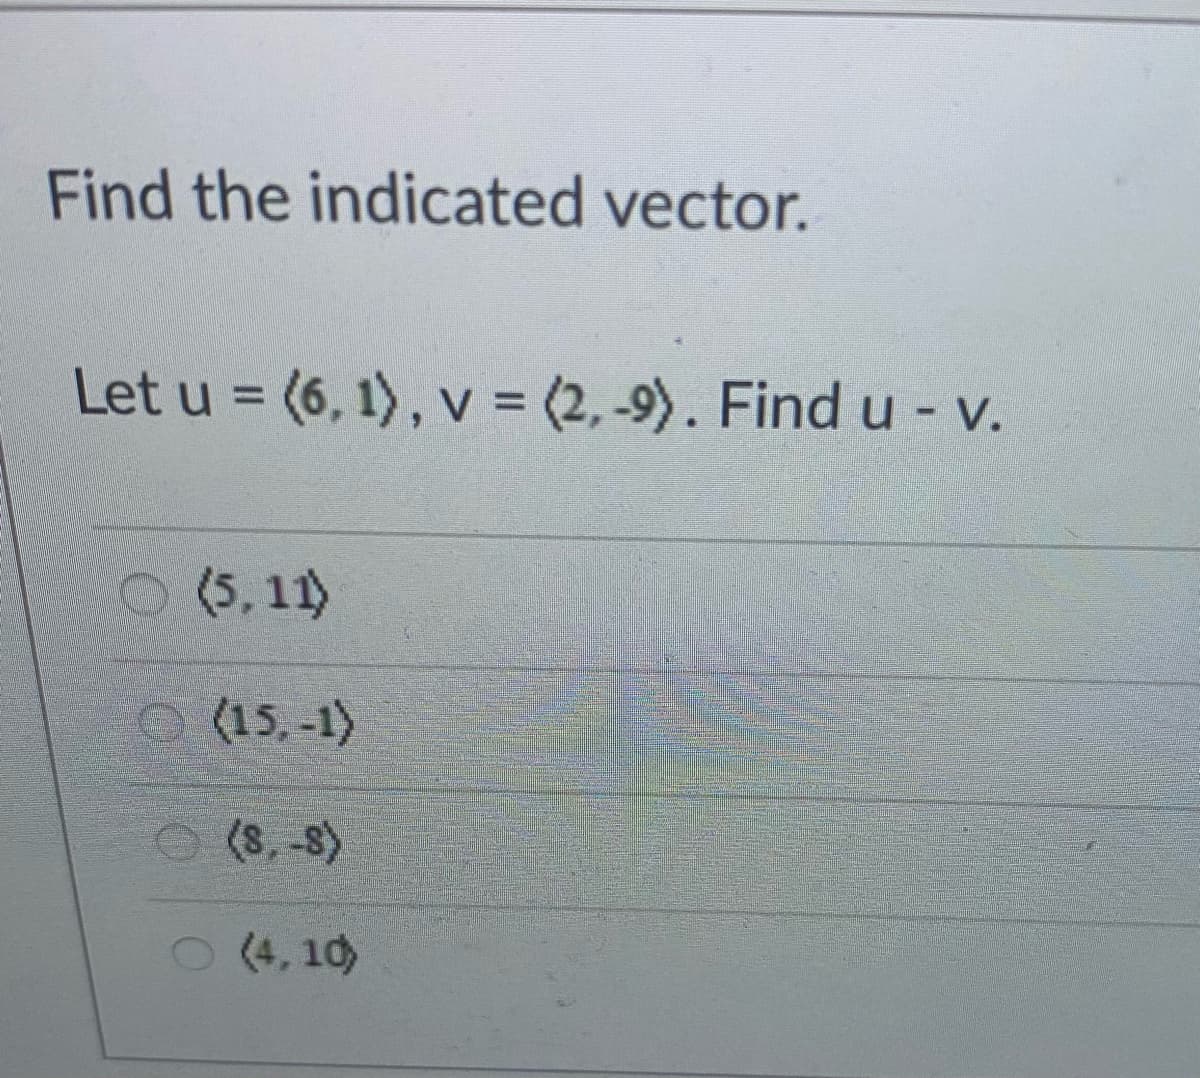 Find the indicated vector.
Let u = (6, 1) , v = (2, -9). Find u - v.
O (5, 11)
(15,-1)
(8, -8)
(4, 10)
